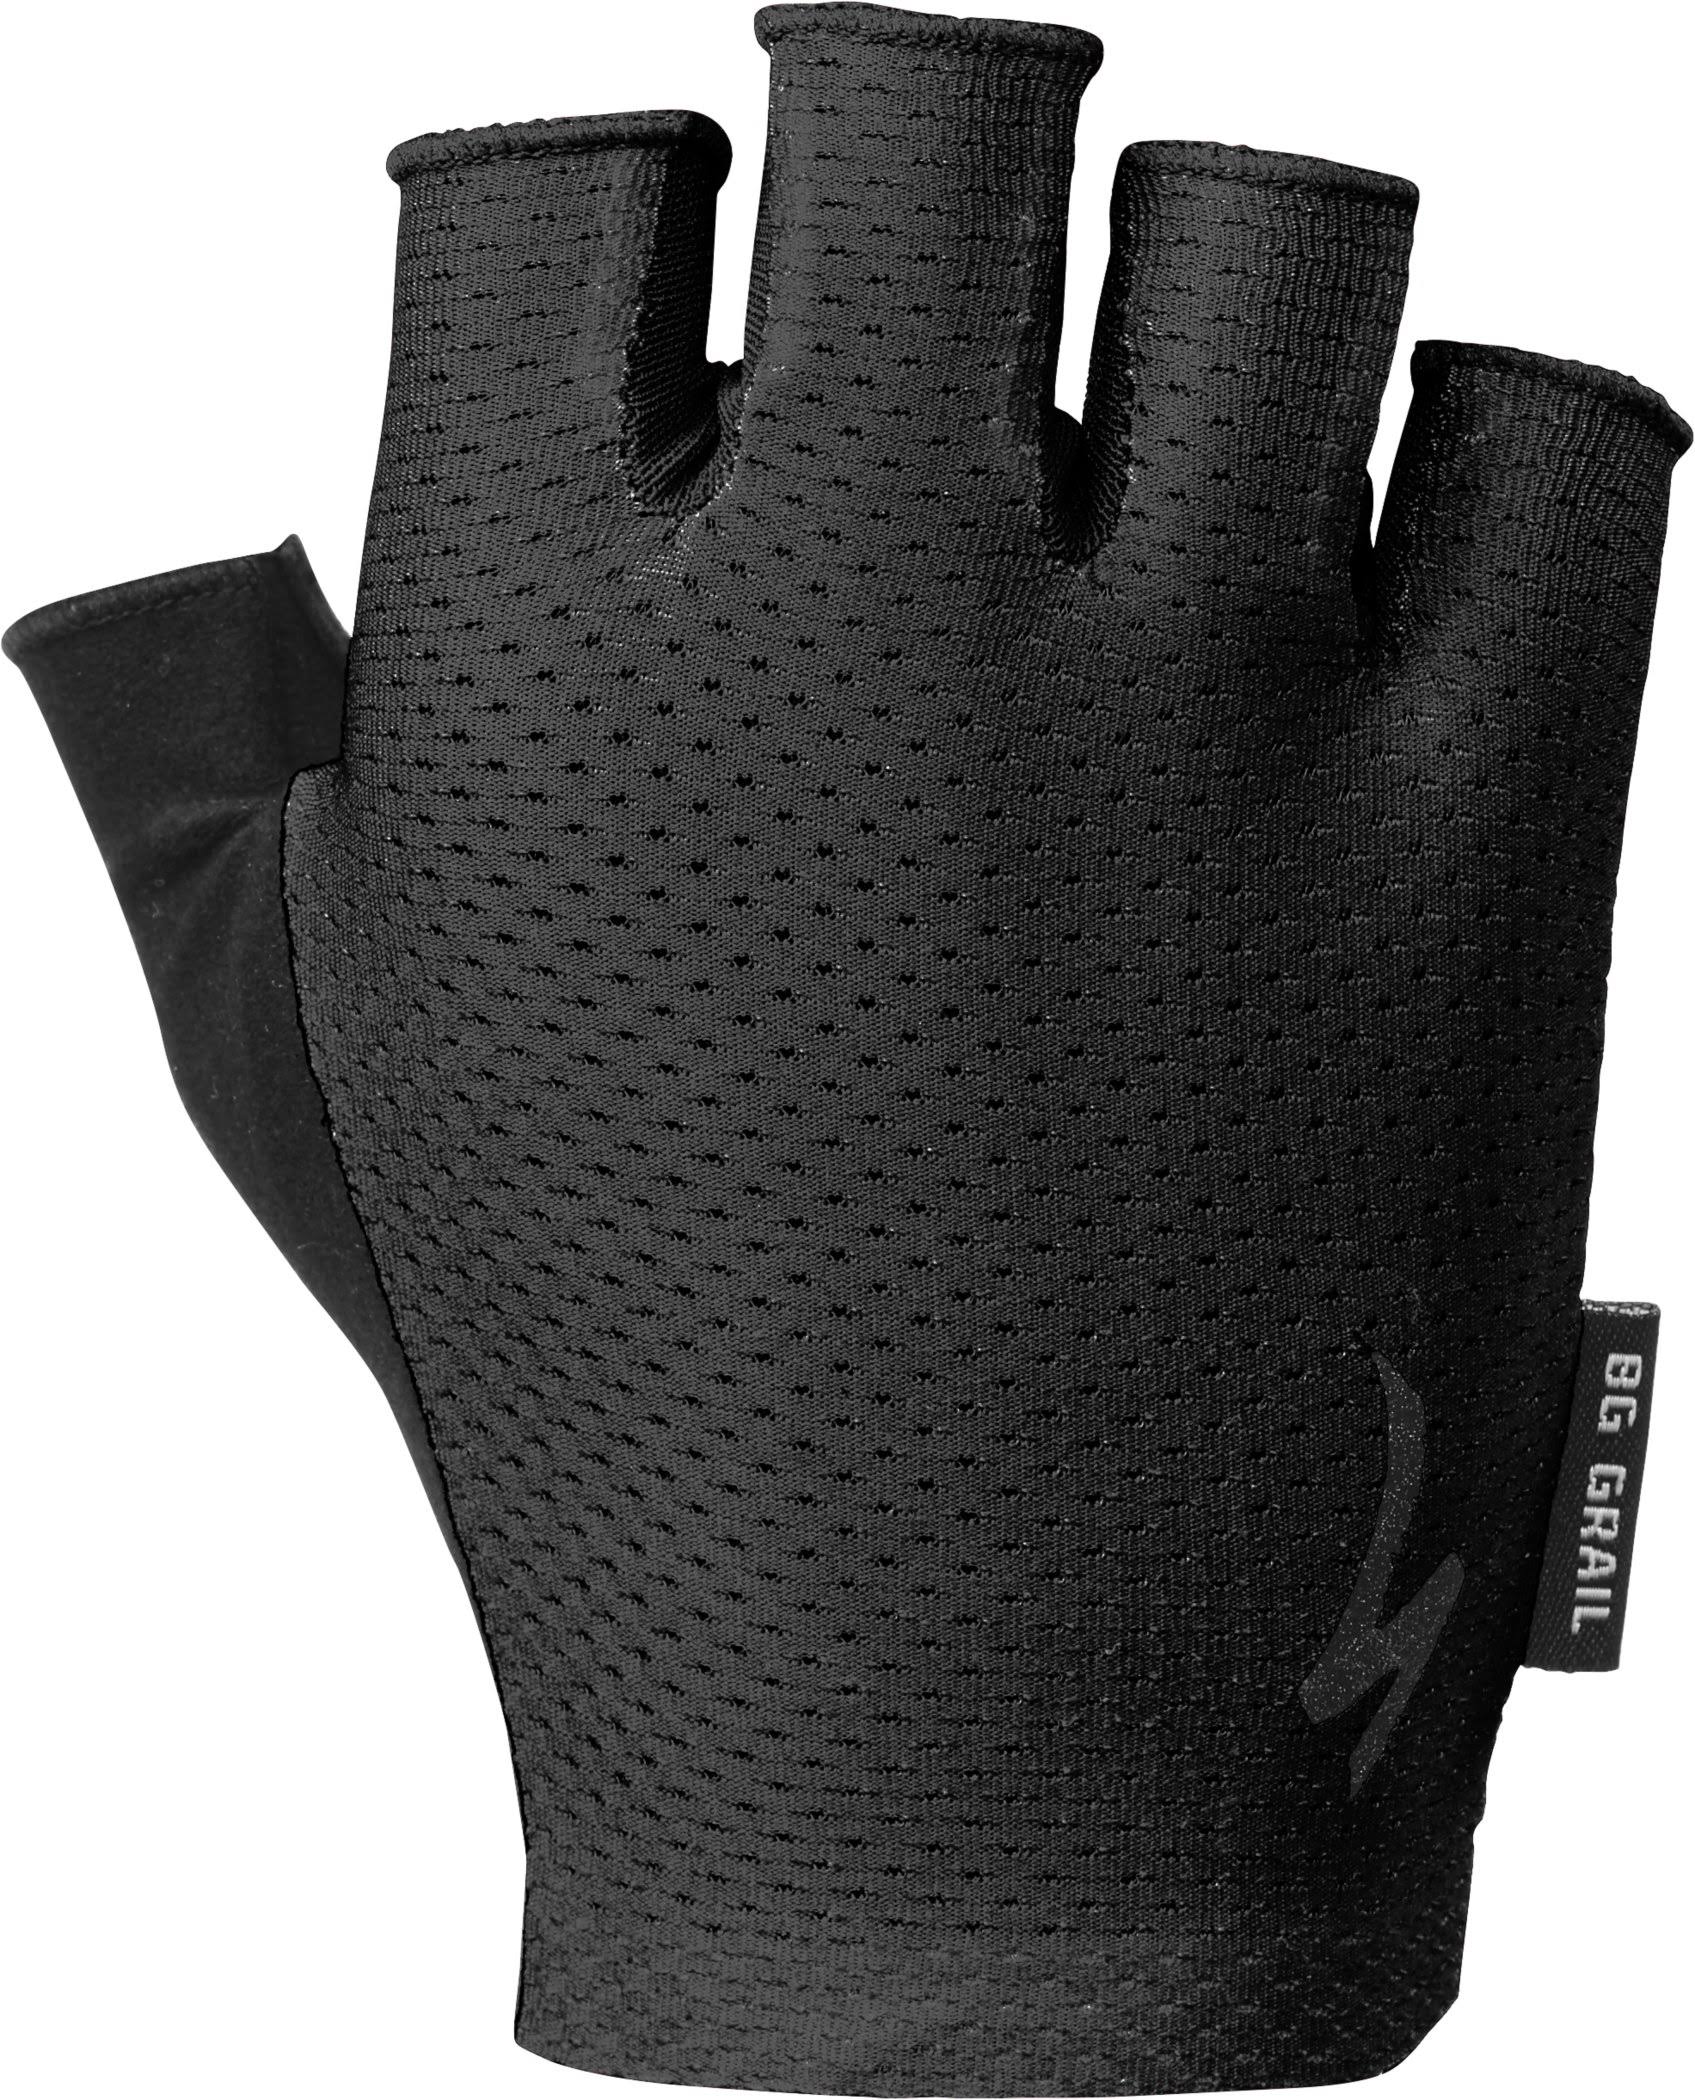 Specialized Body Geometry Grail Gel Women's Half Finger Gloves